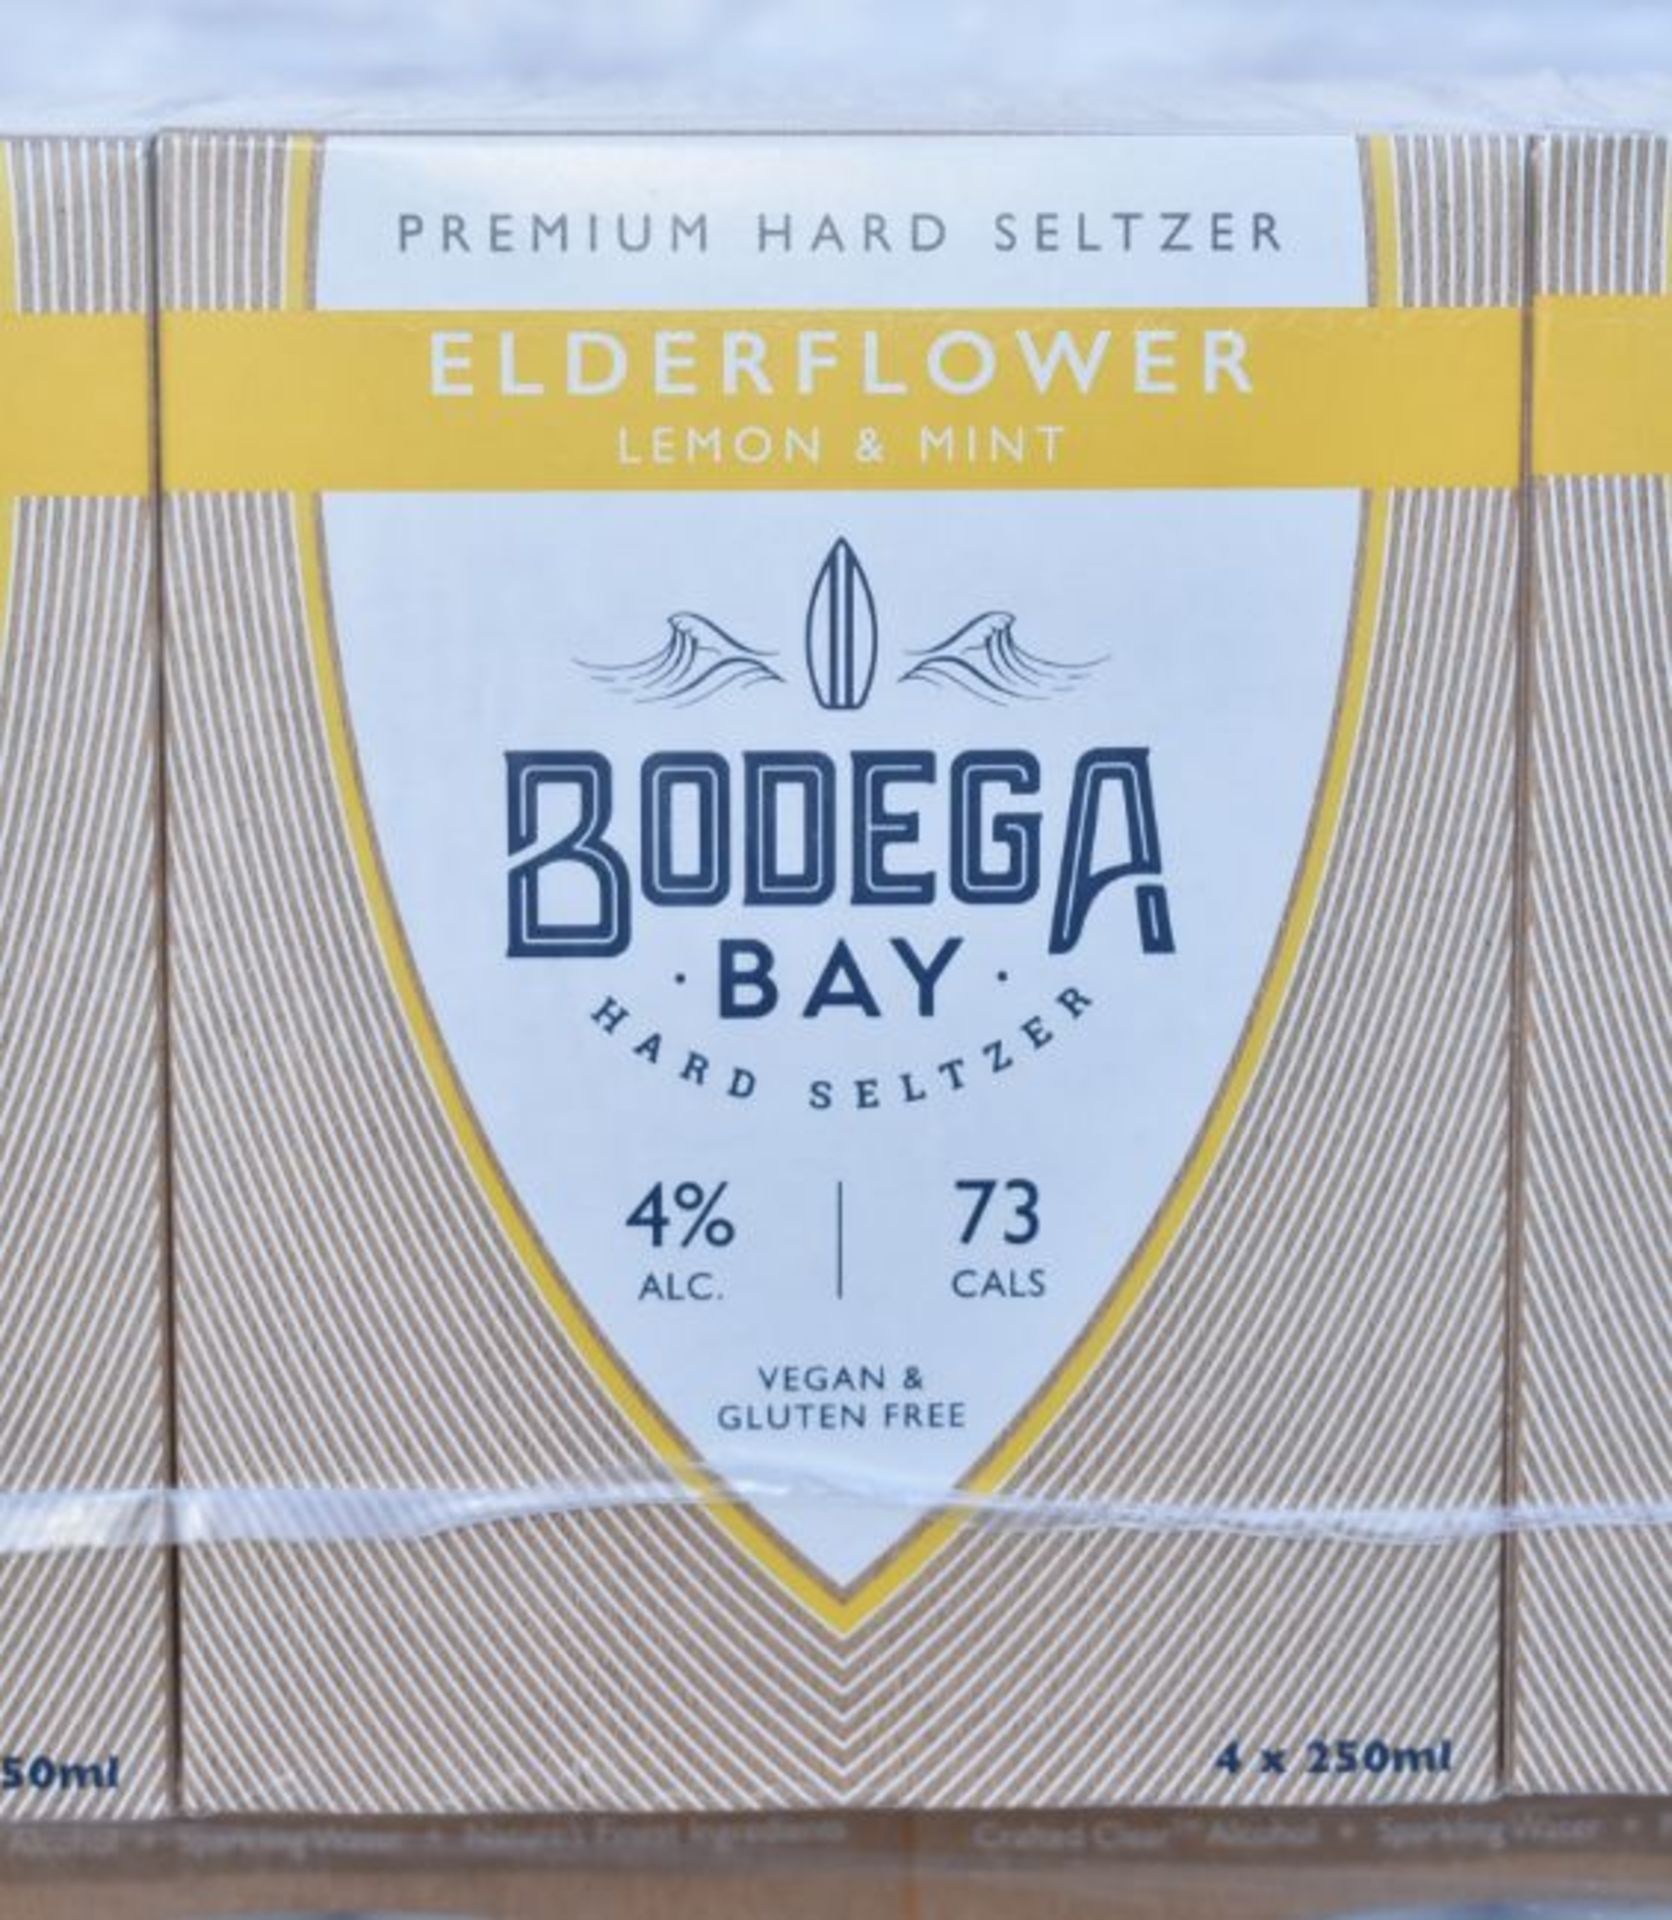 24 x Bodega Bay Hard Seltzer 250ml Alcoholic Sparkling Water Drinks - Elderflower Lemon & Mint - Image 9 of 9